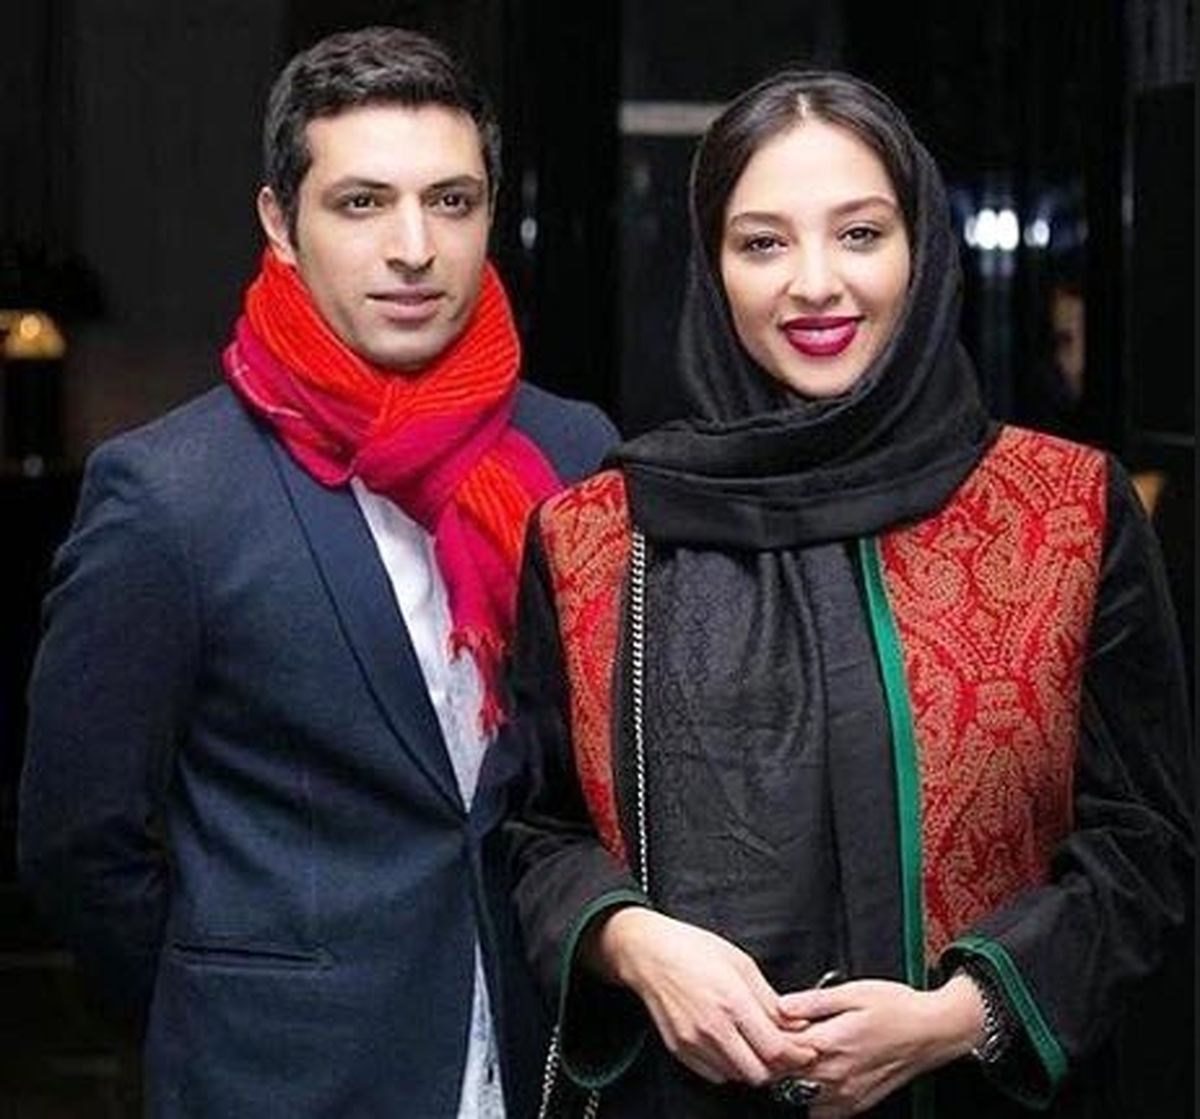  خوش استایل ترین زوج های سینمای ایران را بشناسید/ تصاویر